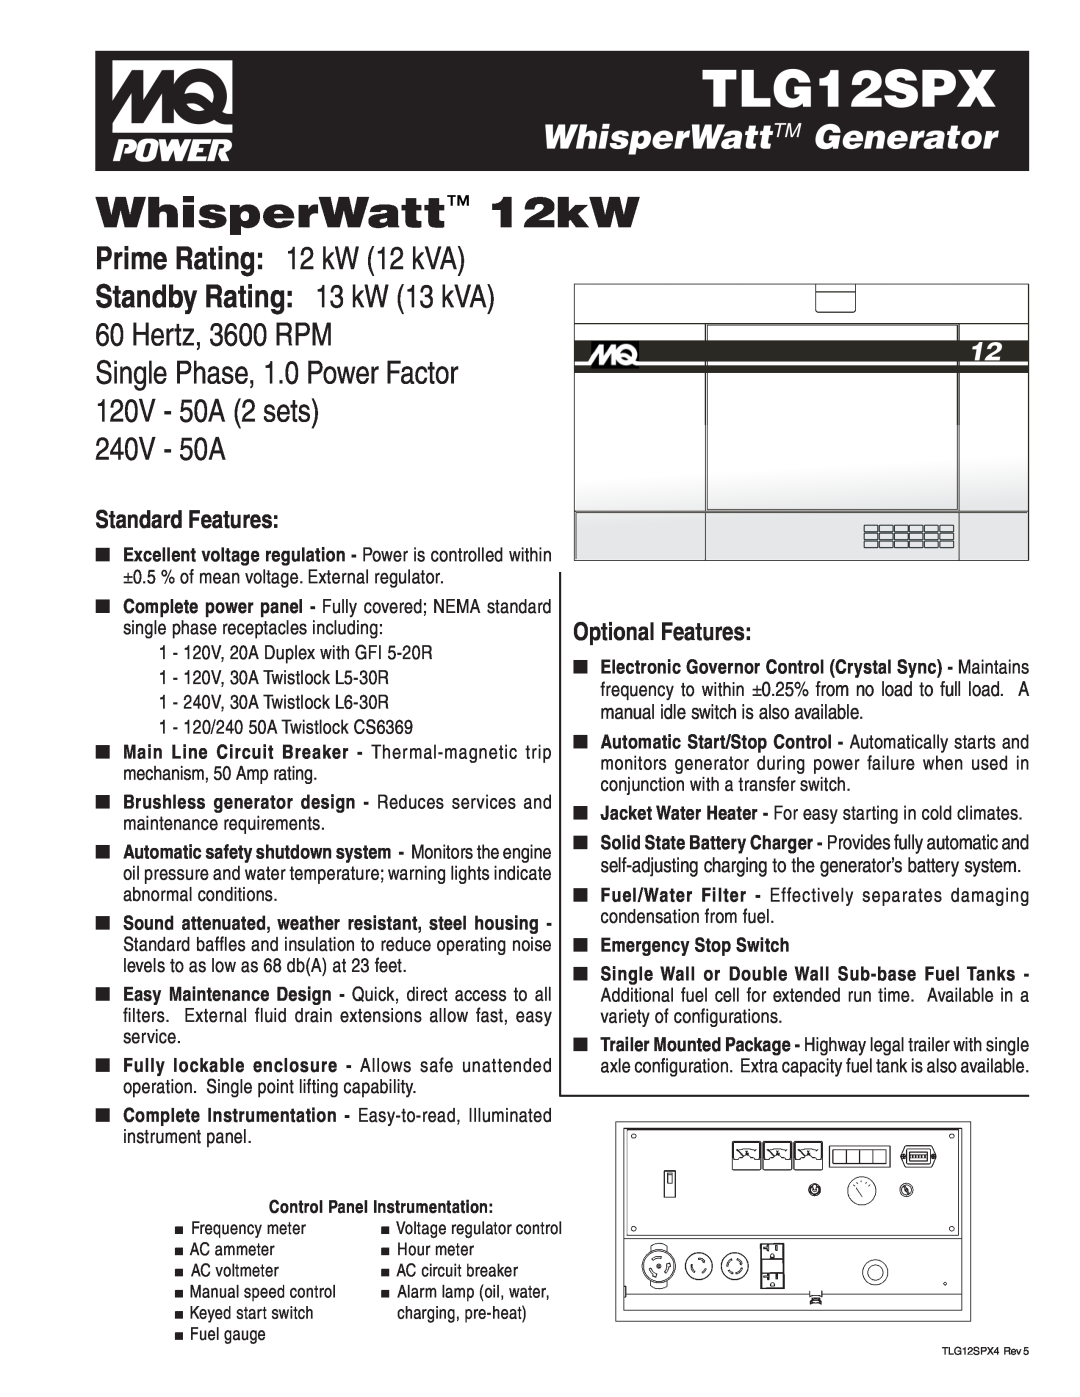 Multiquip TLG12SPX manual WhisperWattTM Generator, WhisperWatt 12kW, Prime Rating 12 kW 12 kVA, 240V - 50A 